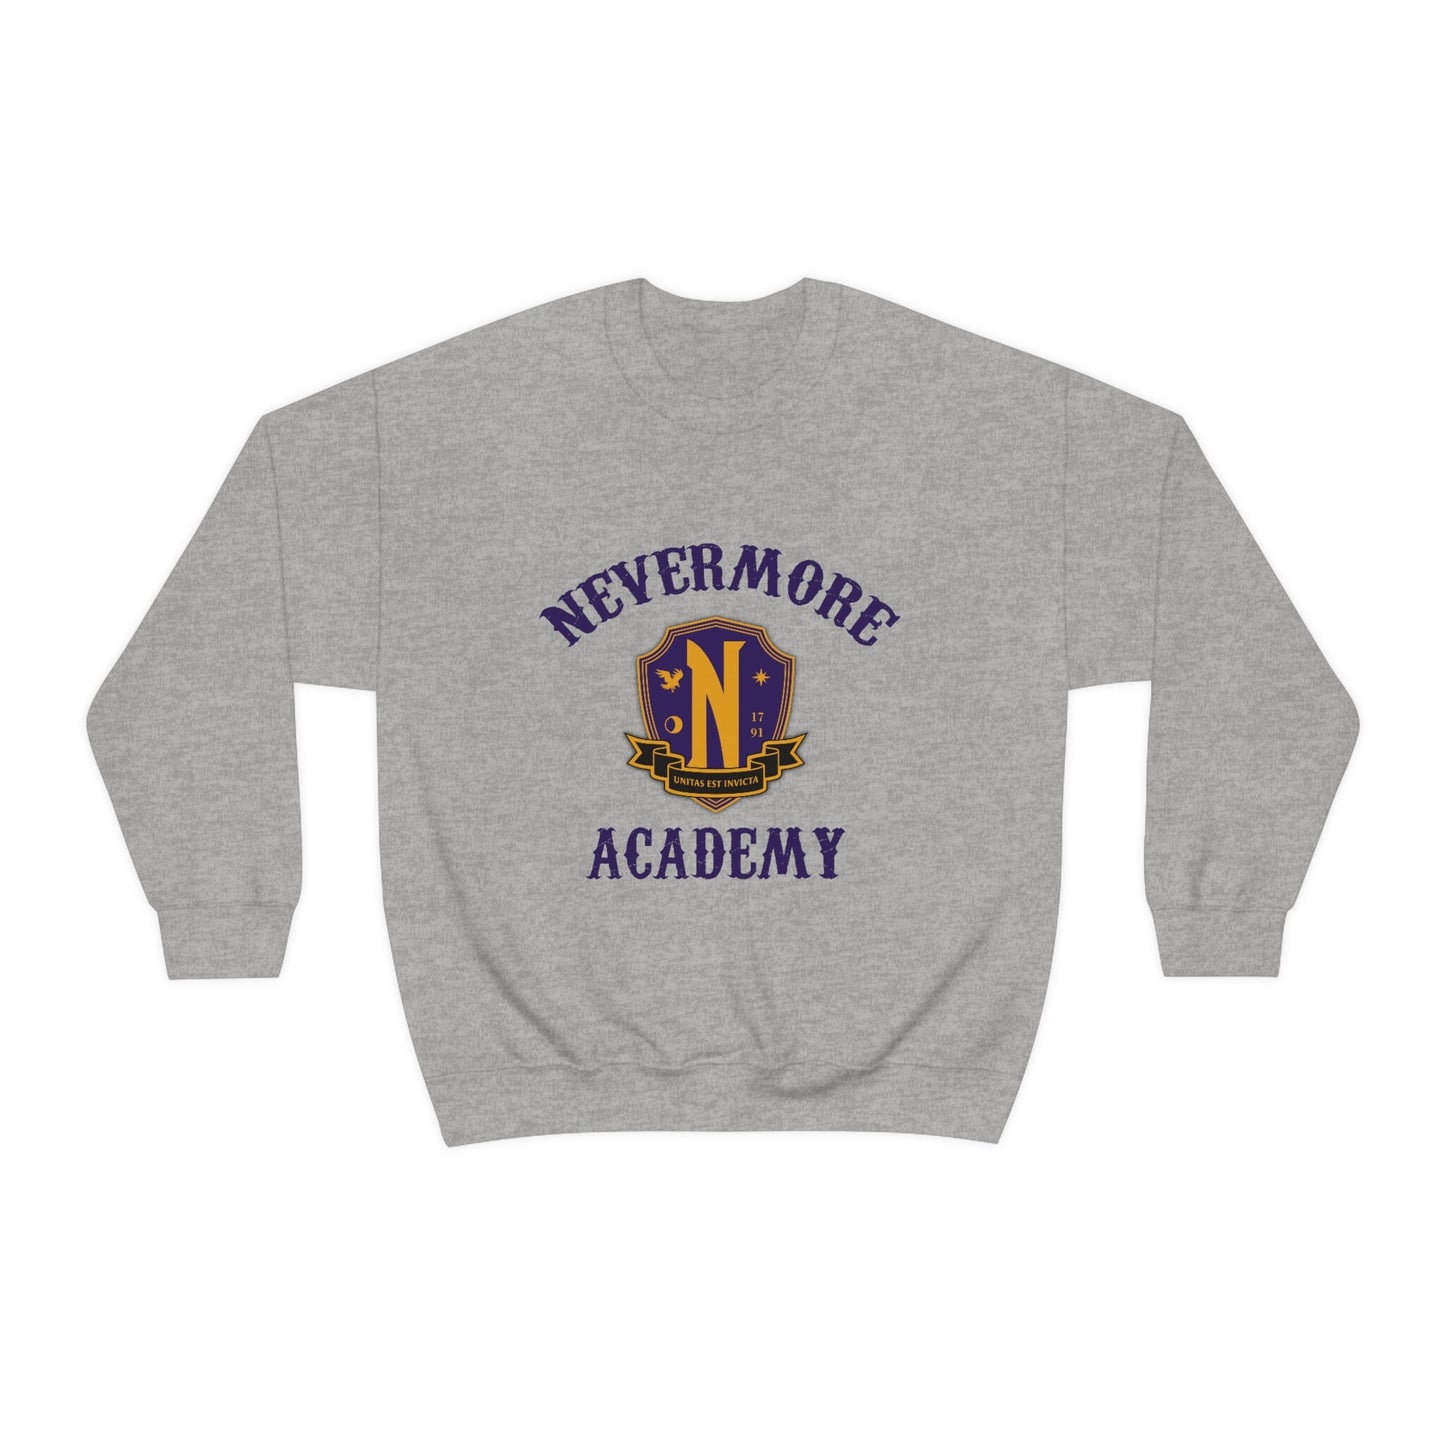 Nevermore Academy Sweatshirt, Wednesday Addams Sweatshirt, Wednesday Addams, Addams Family, Horror Sweatshirt